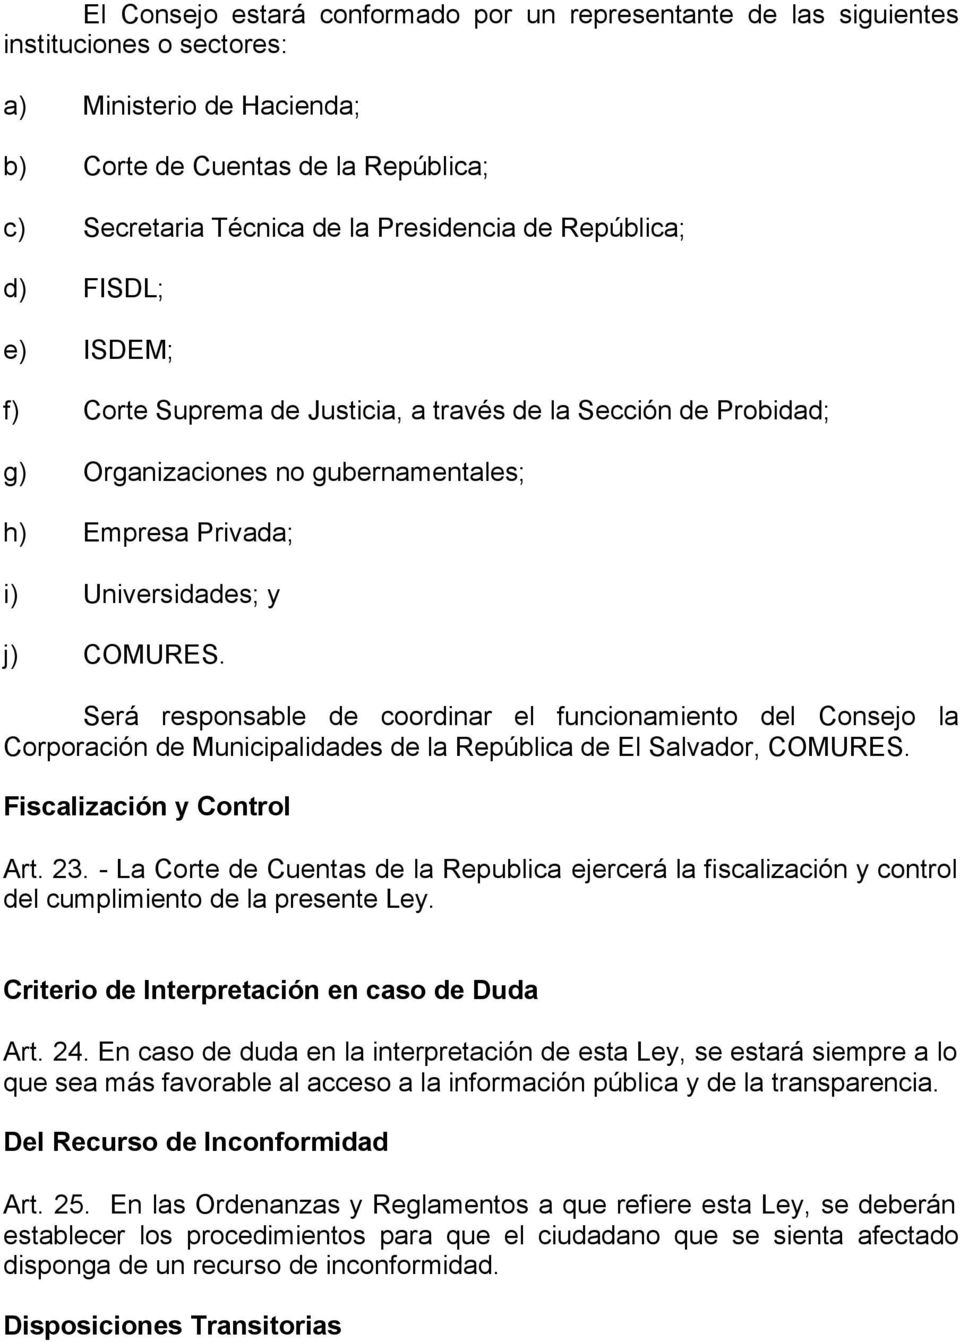 Será responsable de coordinar el funcionamiento del Consejo la Corporación de Municipalidades de la República de El Salvador, COMURES. Fiscalización y Control Art. 23.